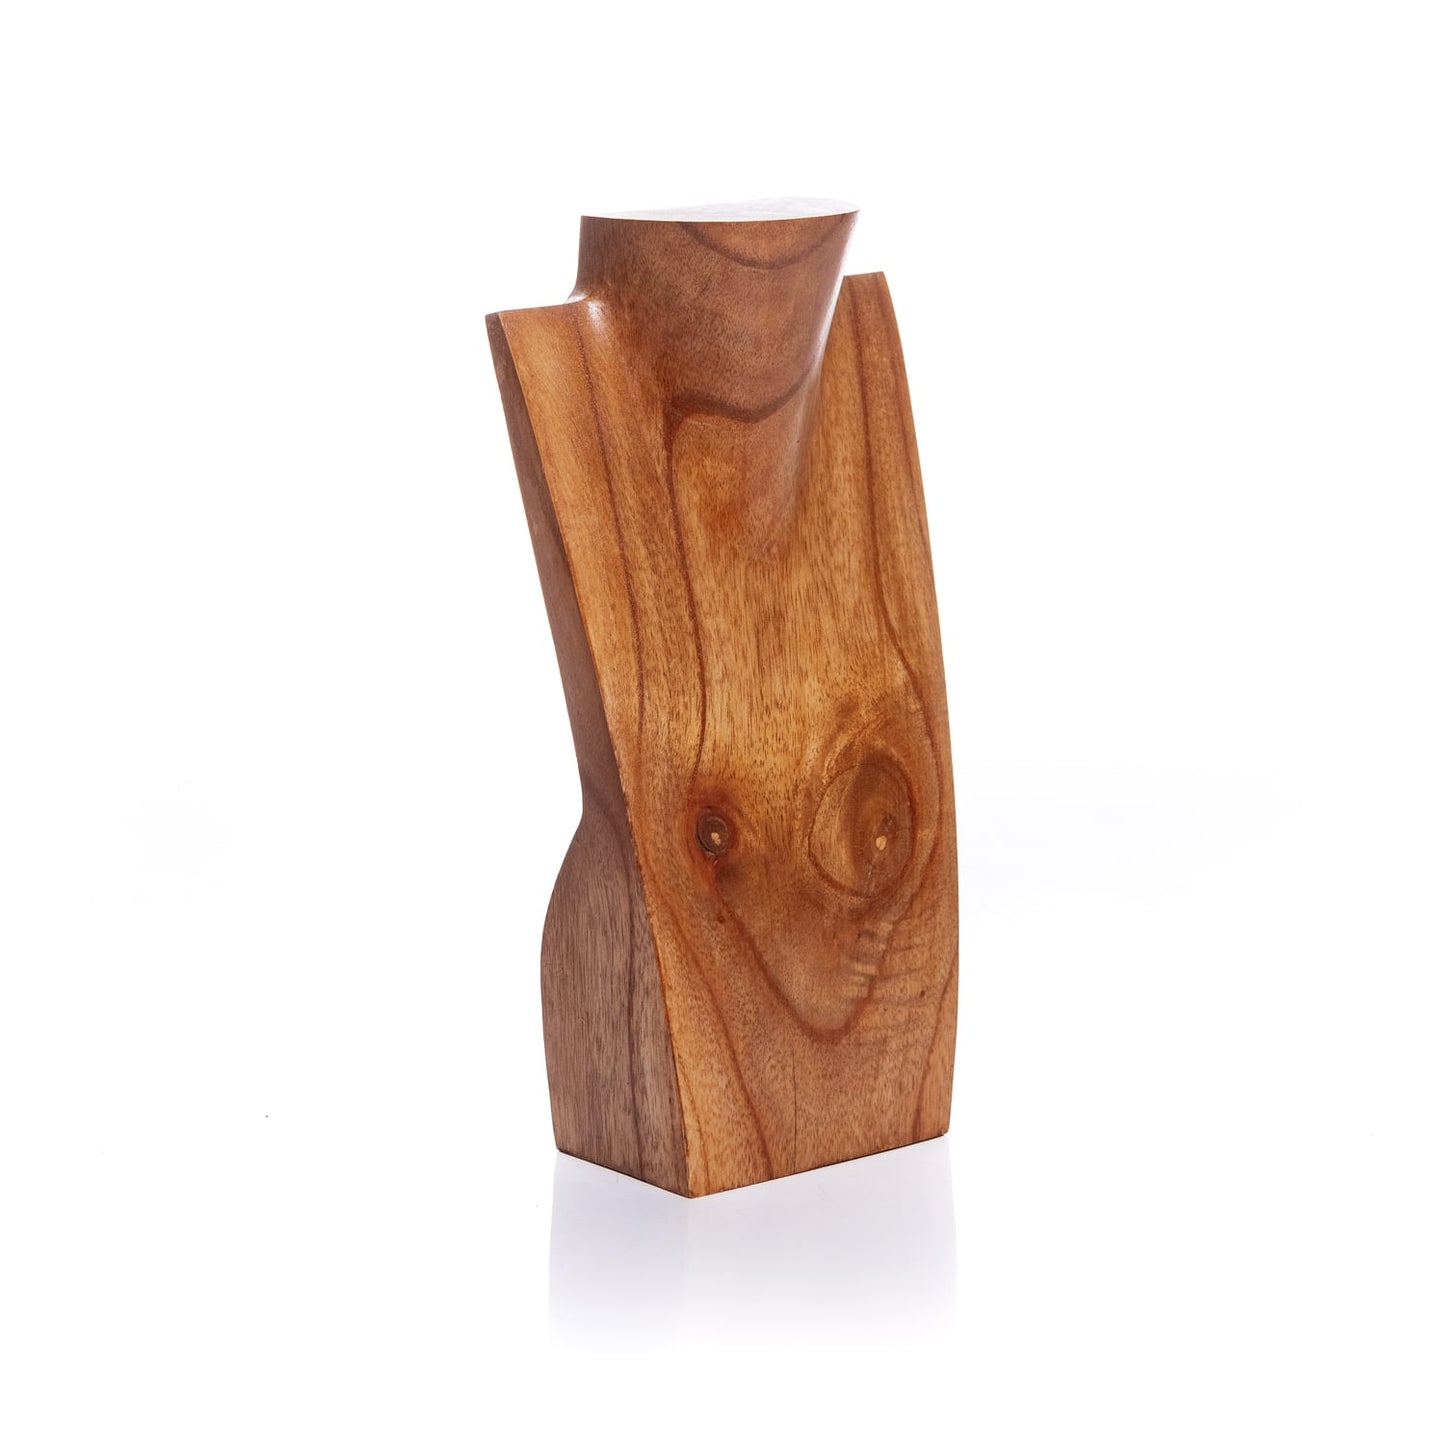 Portacollane in legno - Asmat Design